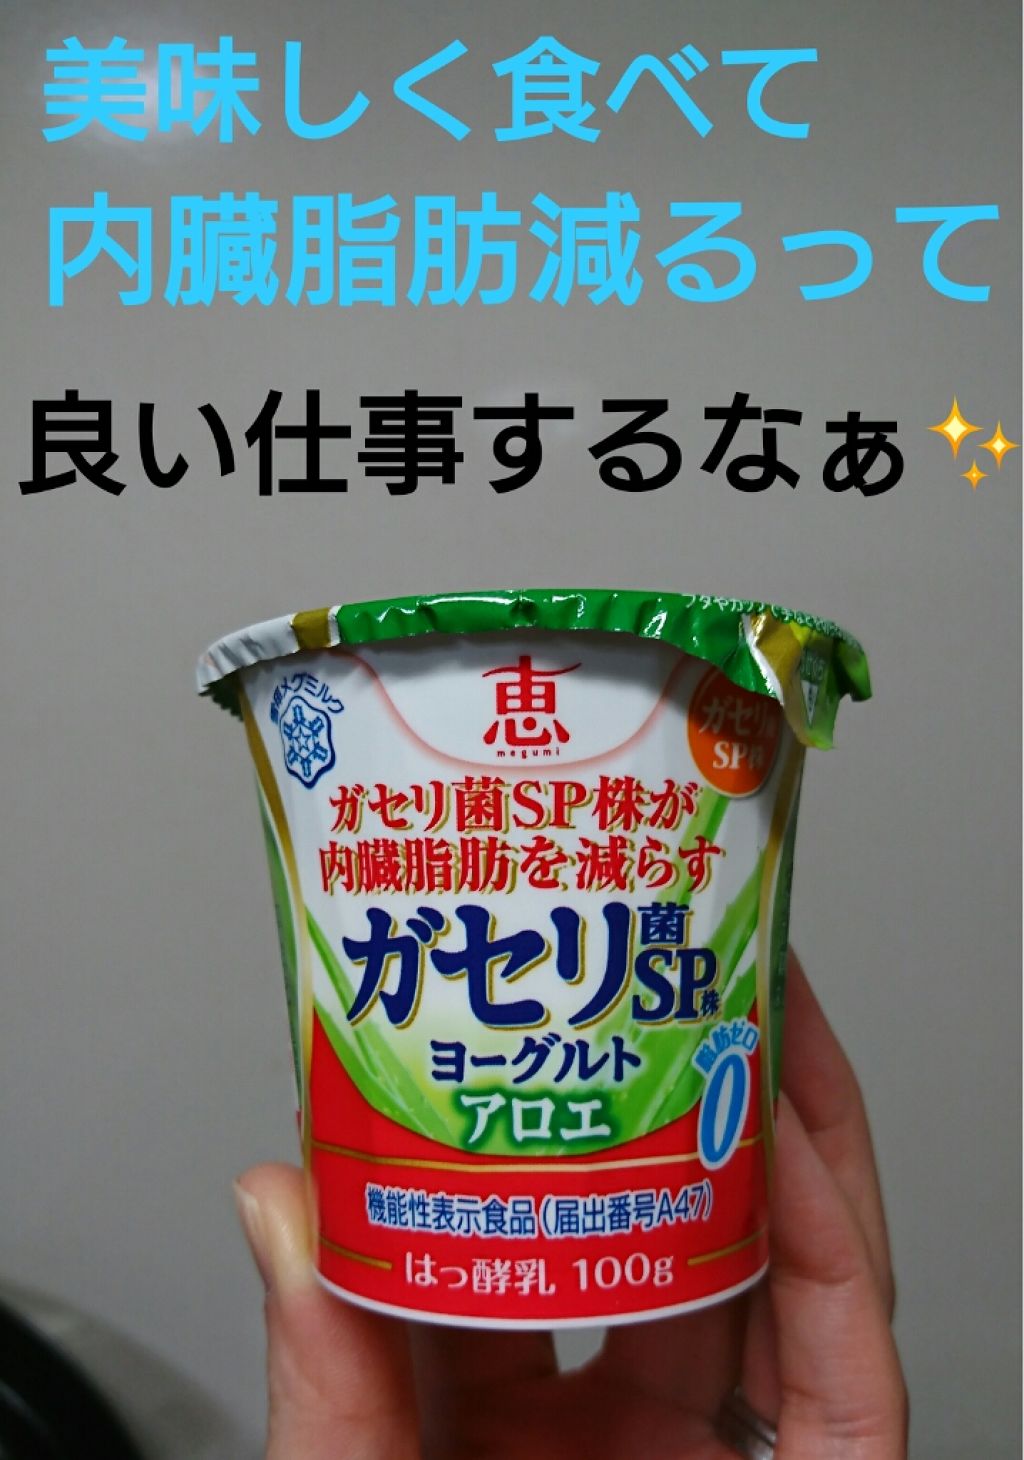 恵 Megumi ガセリ菌sp株ヨーグルト 雪印メグミルクの口コミ ダイエット中に食べるなら ダイエットの助け By こはる 乾燥肌 40代前半 Lips